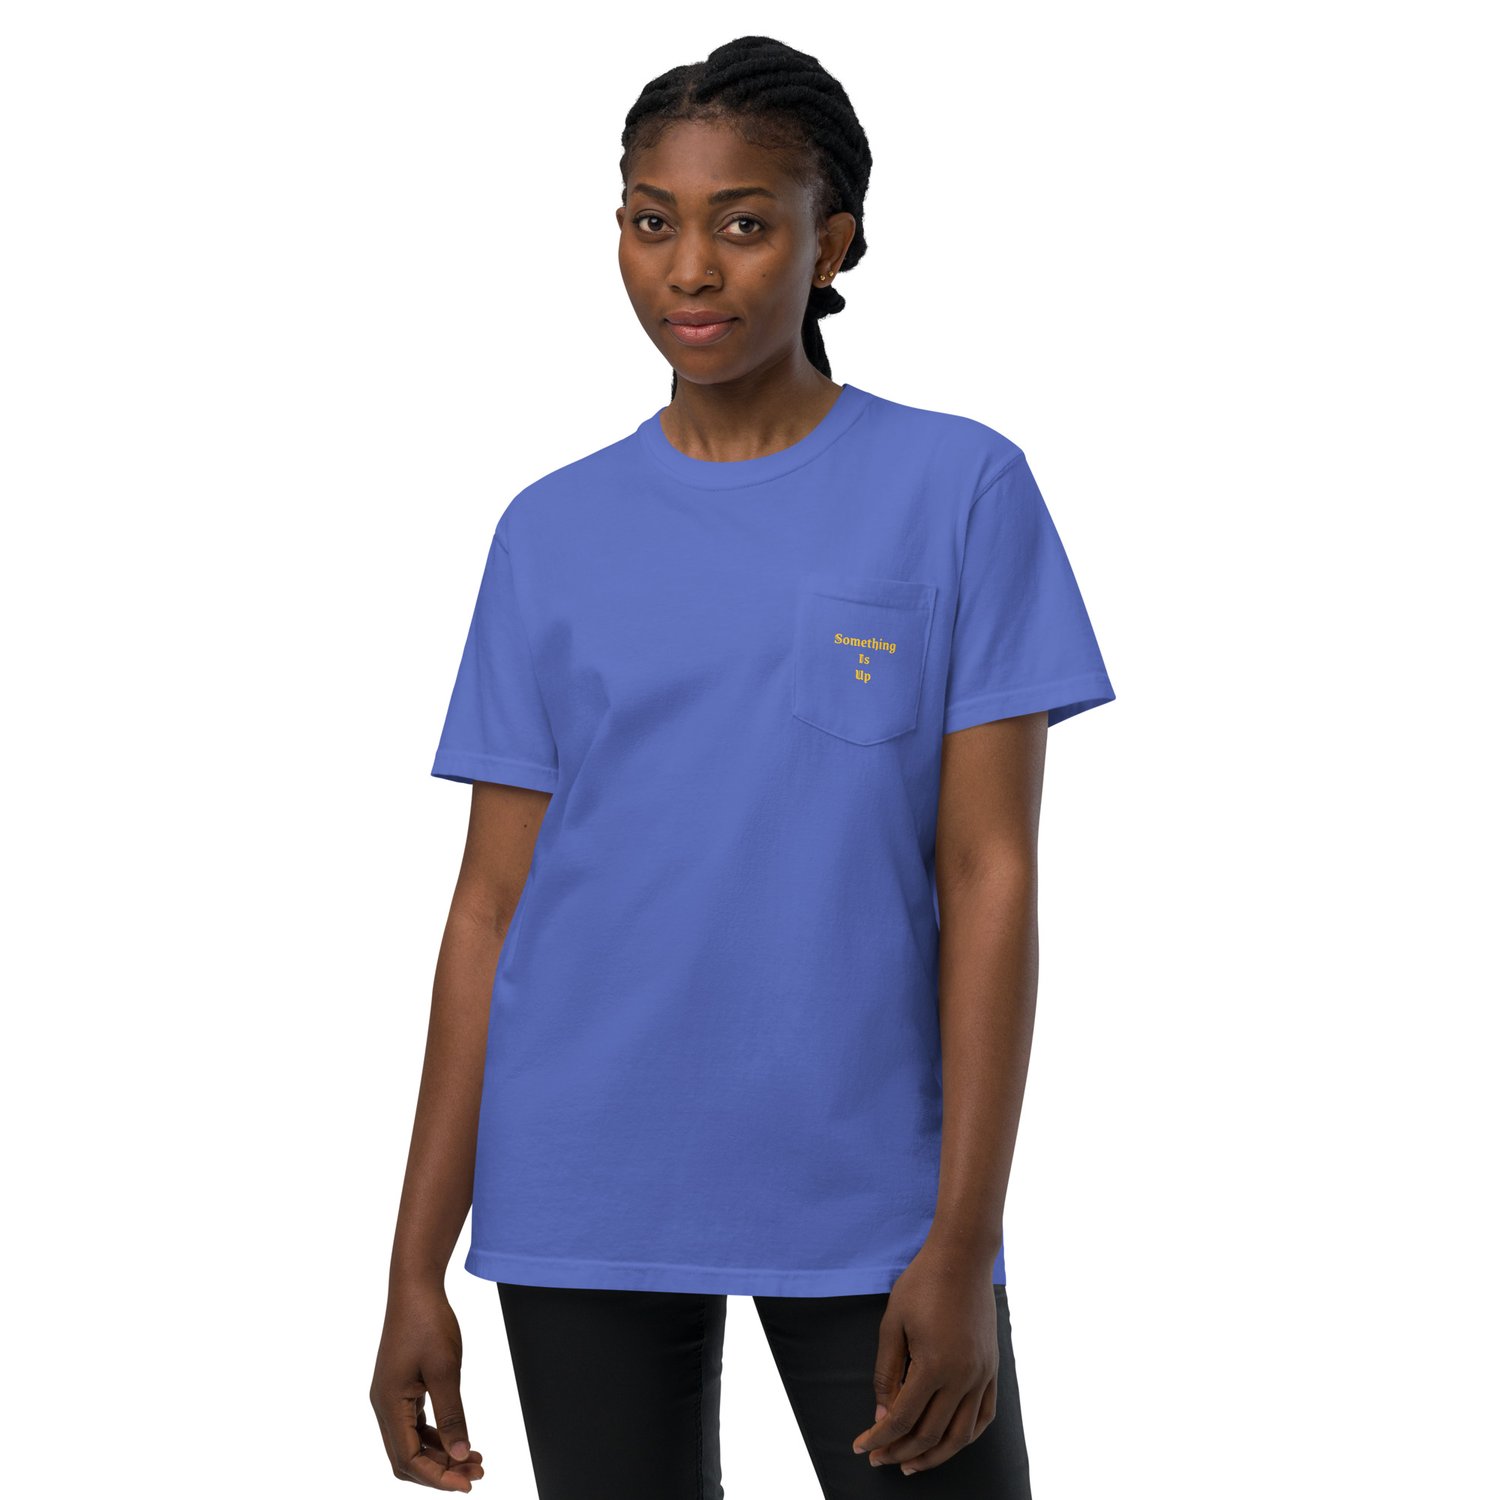 Image of "Something Is Up" Unisex garment-dyed pocket t-shirt